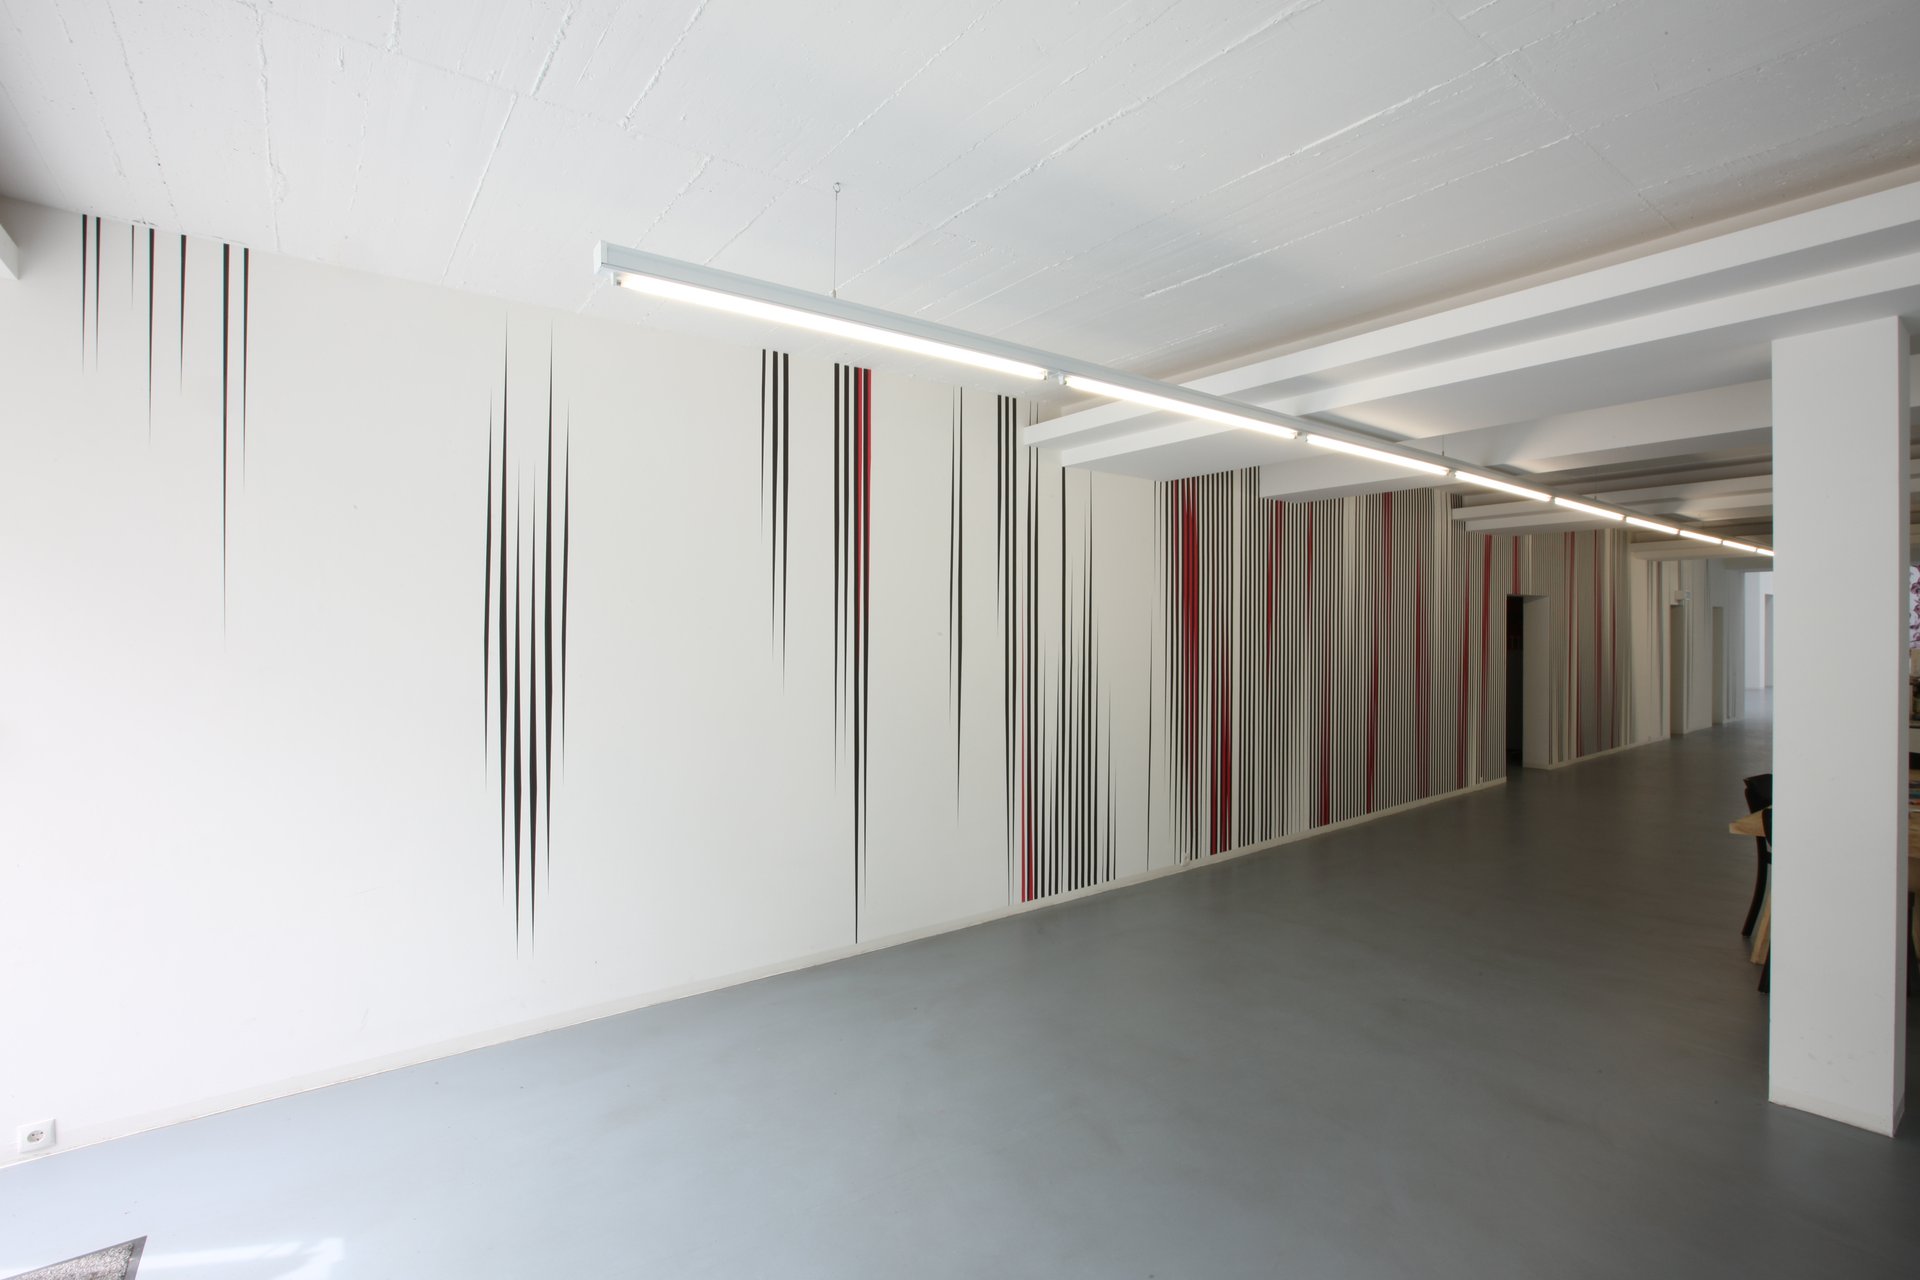 Philippe Decrauzat, Installationsansicht, Bonner Kunstverein, 2008. Photo: Alistair Overbruck